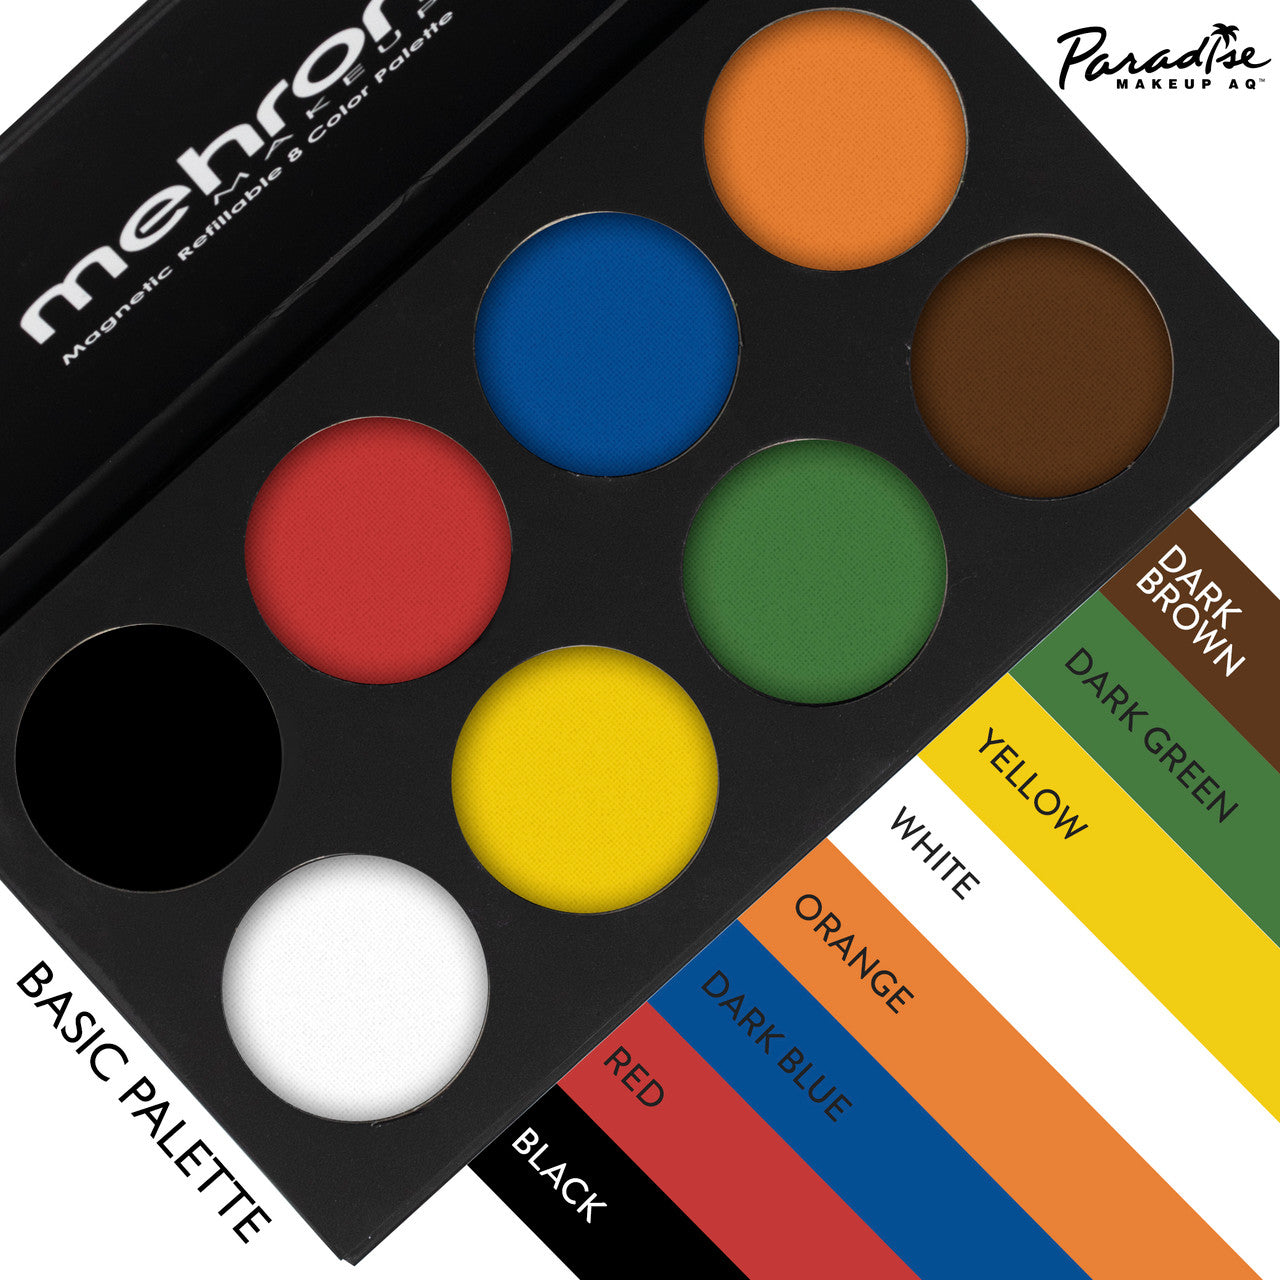 Paradise Makeup AQ™ - 8 Color Magnetic Refillable Palette Basic